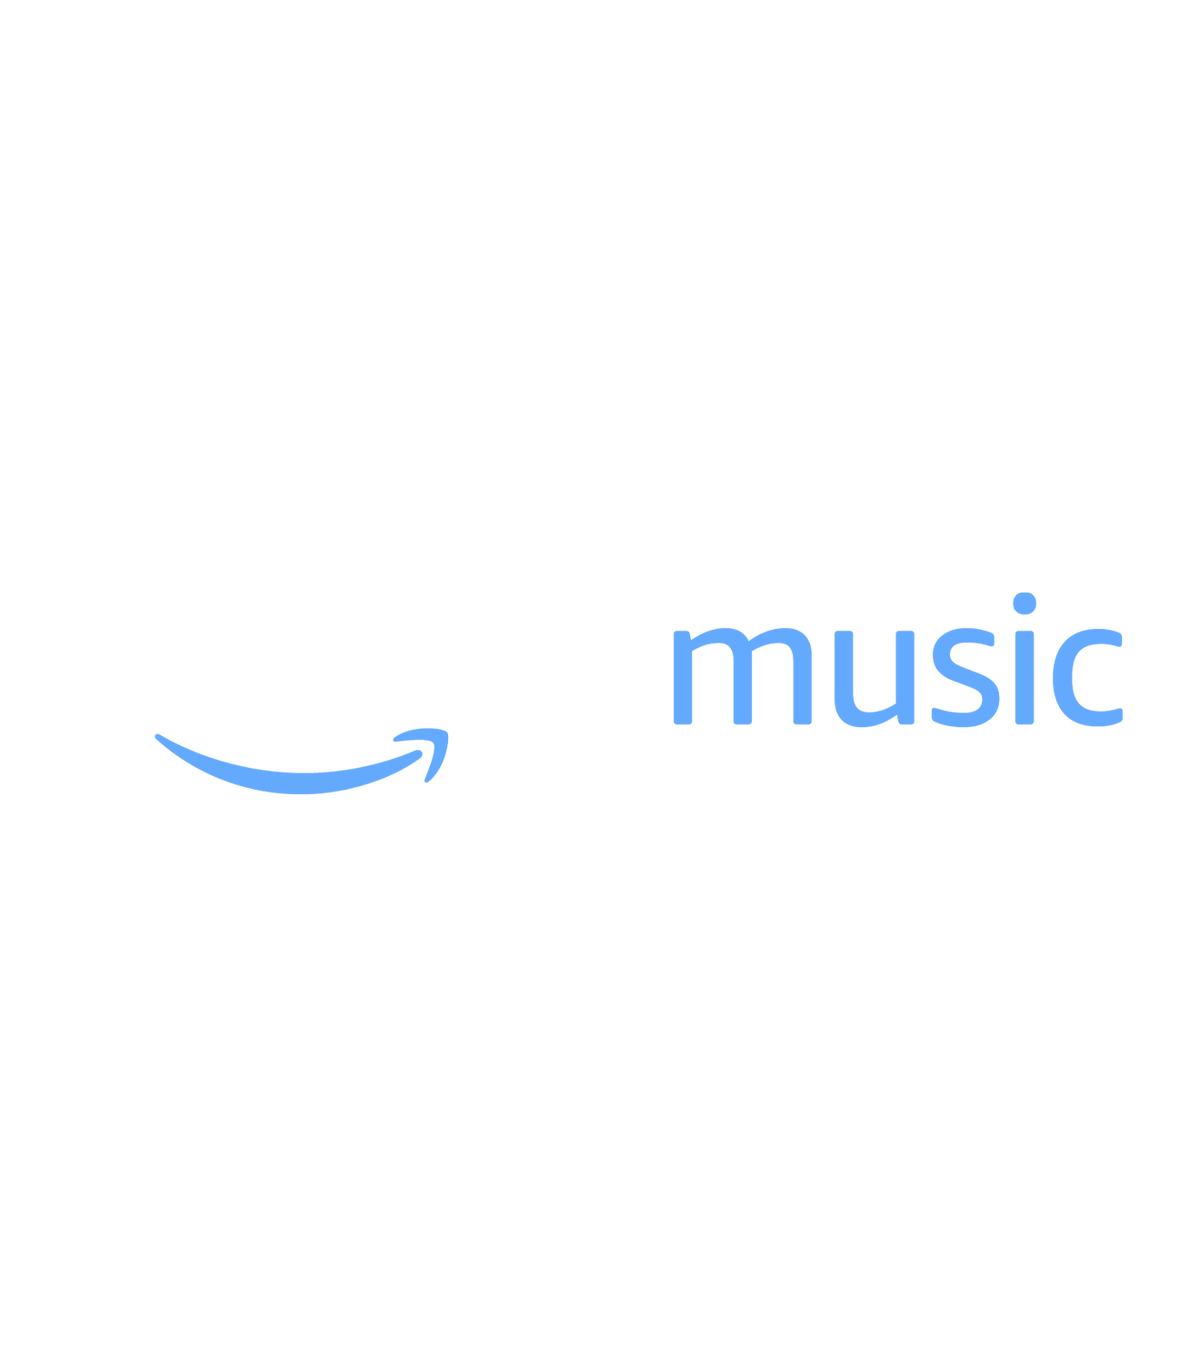 Amazon Music Unlimited 3 Monate kostenlos by Amazon | Musikproduzentwerden.de